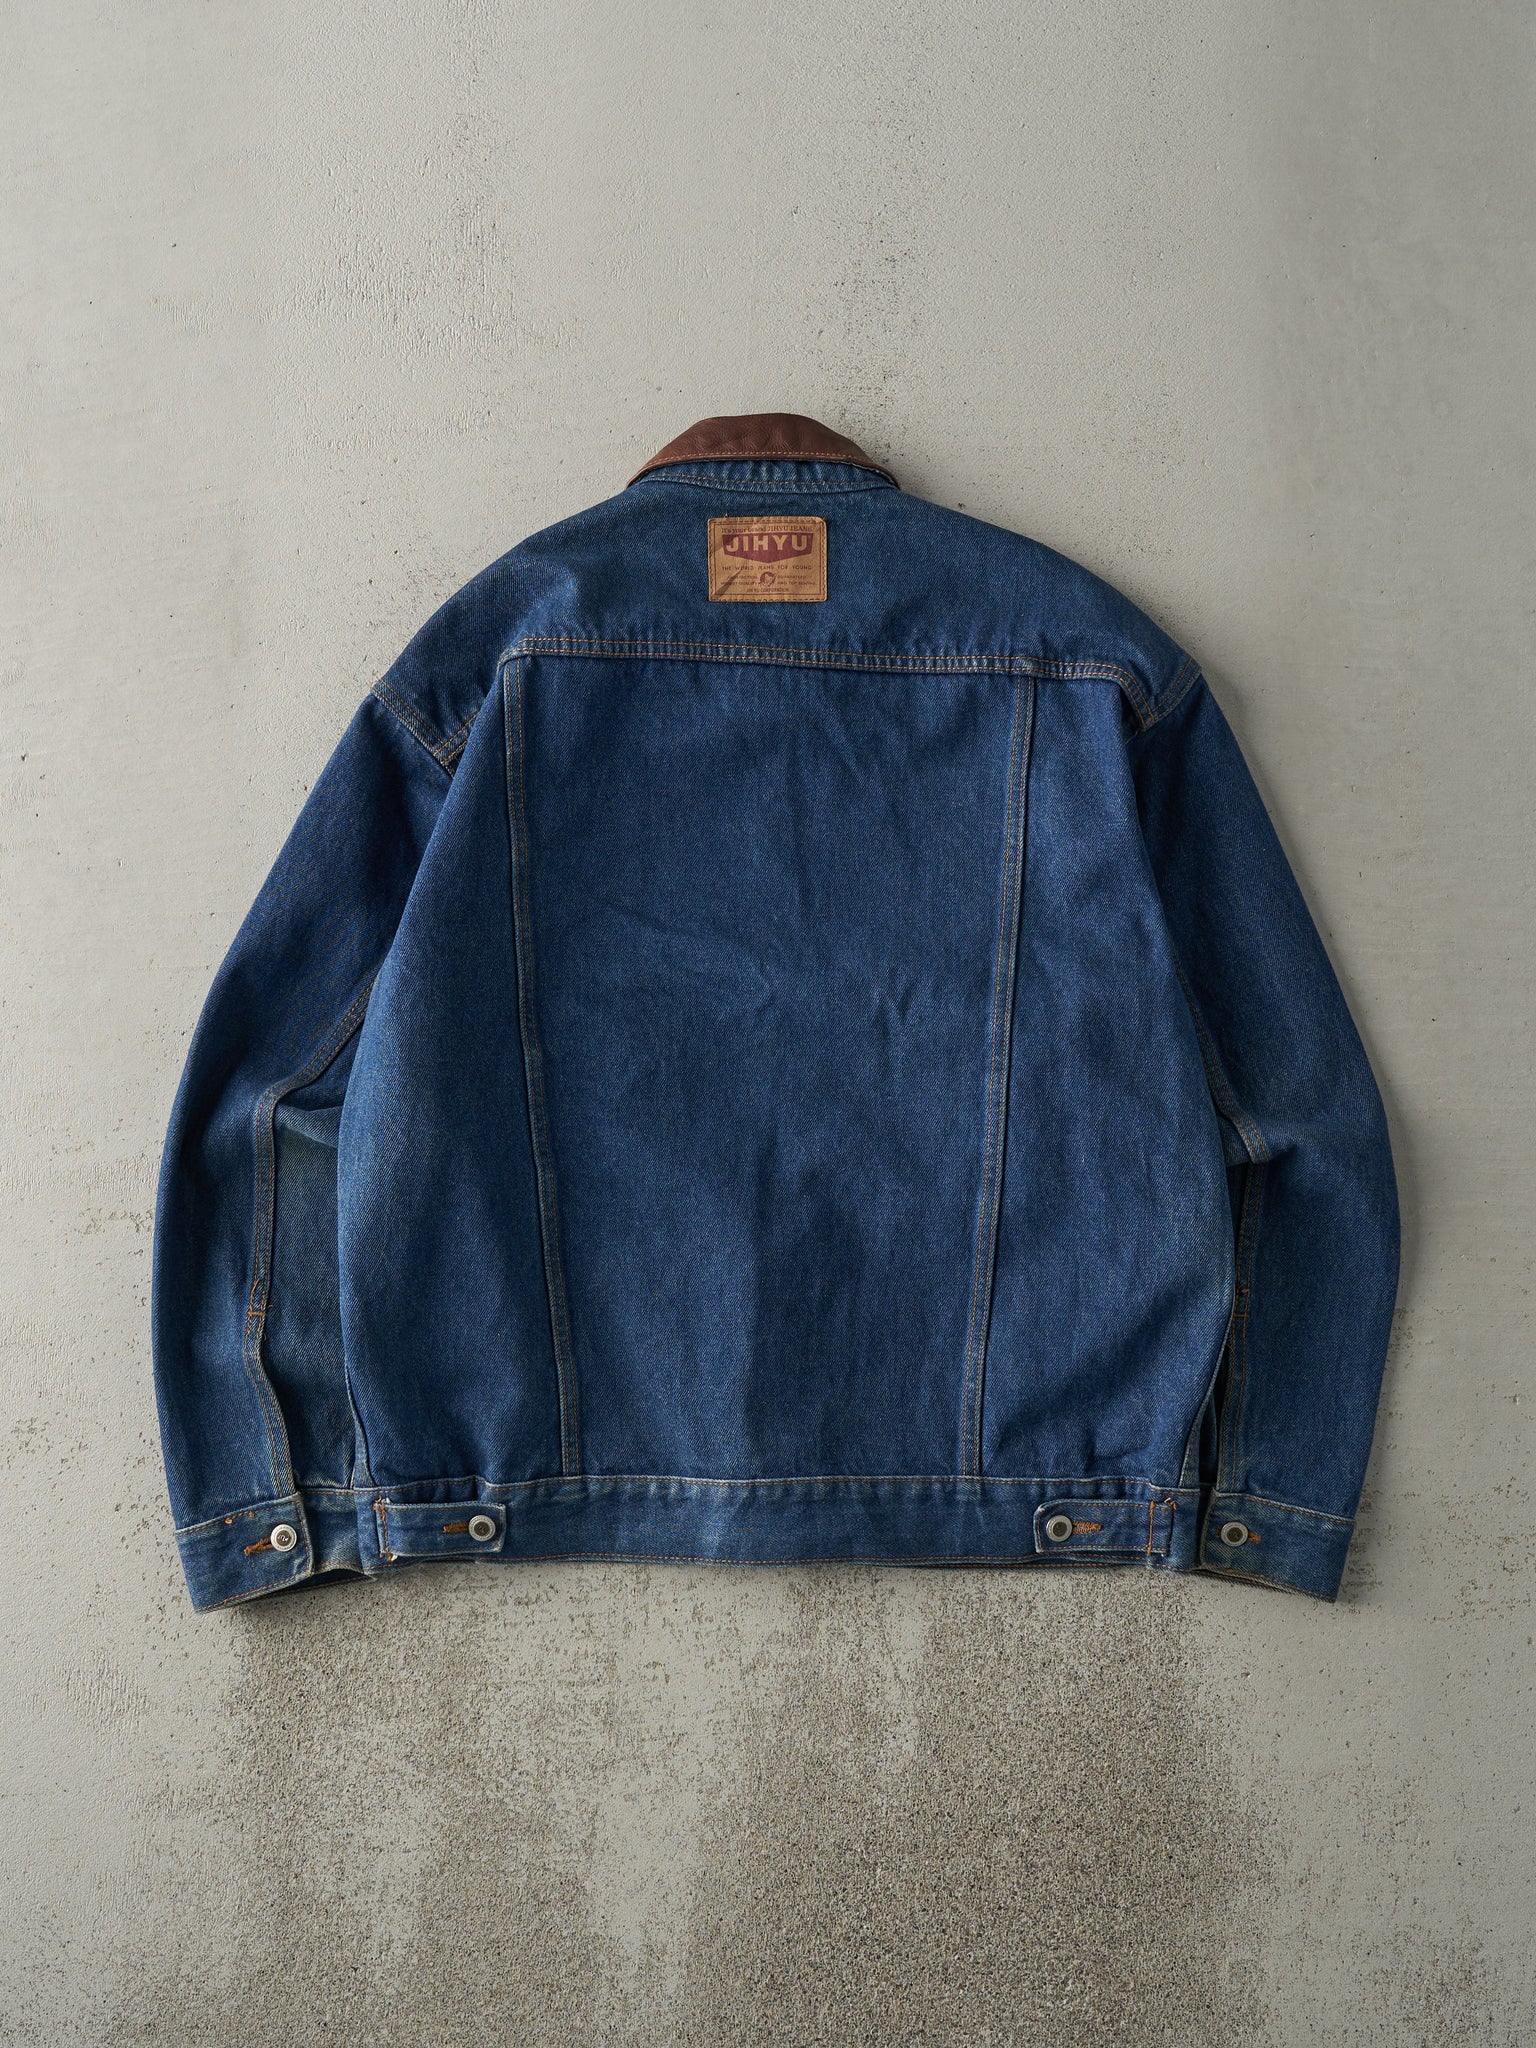 Vintage 90s Dark Wash Denim Jacket (M)